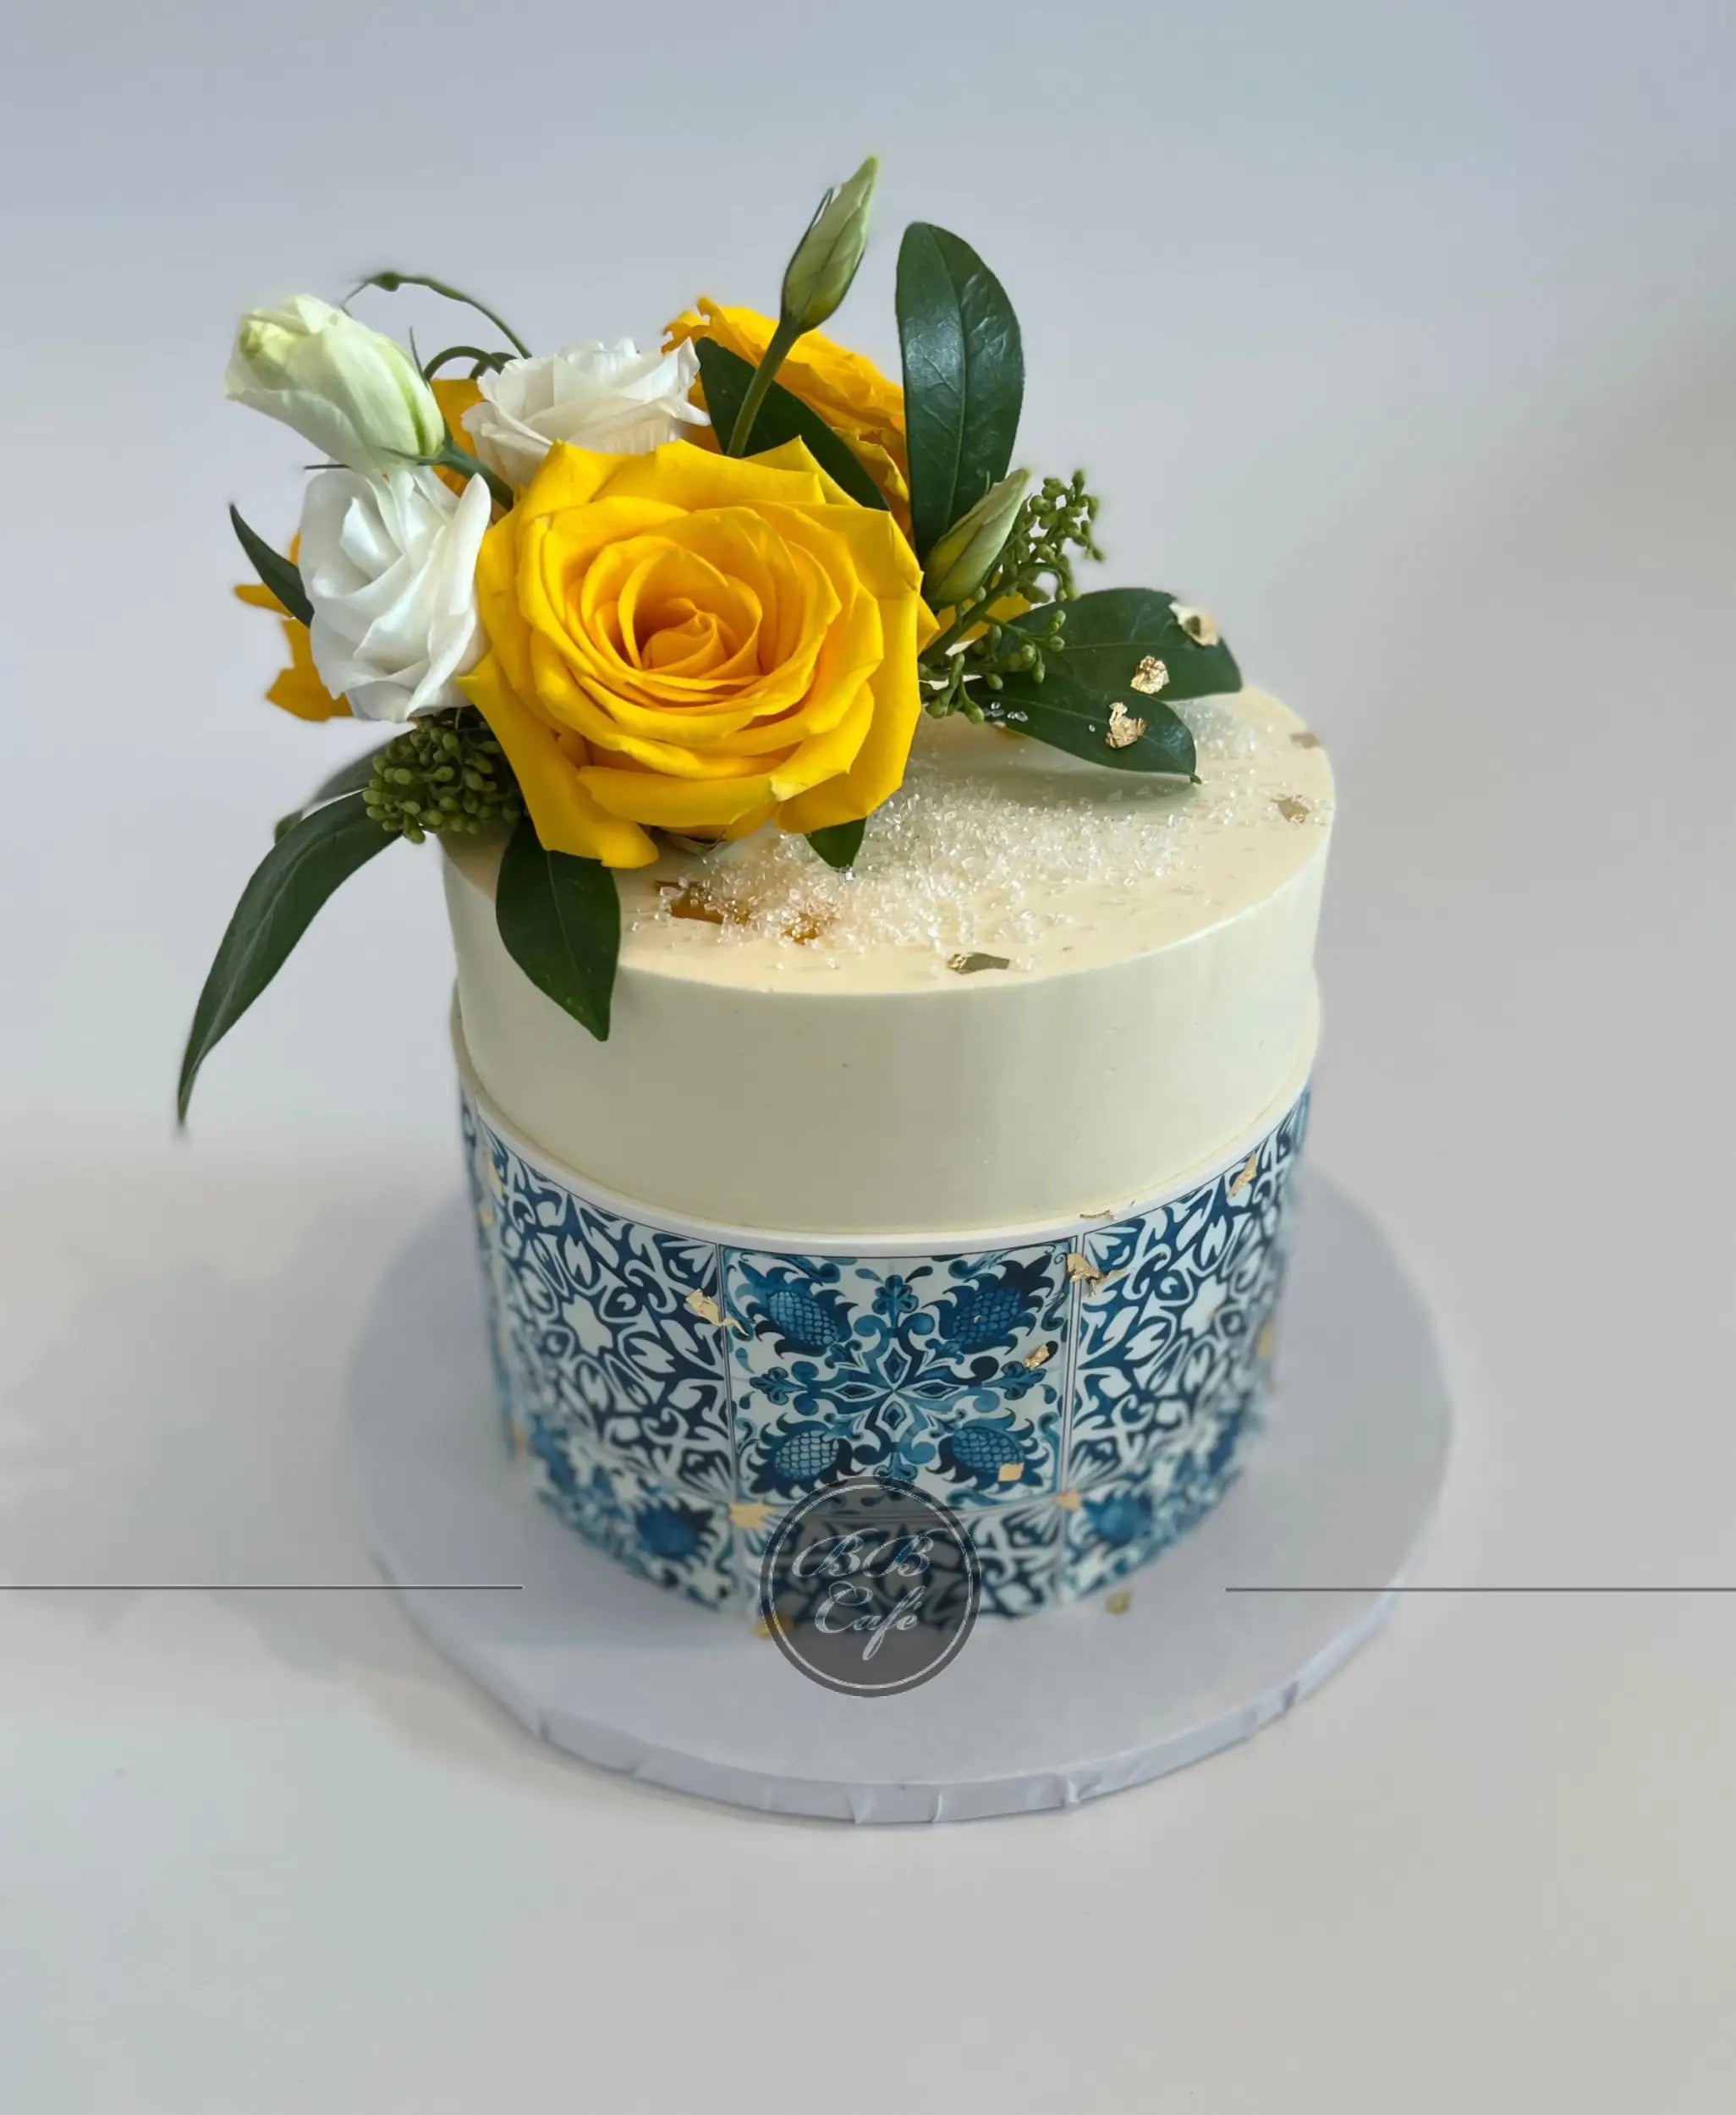 Tile edible print on buttercream - custom cake